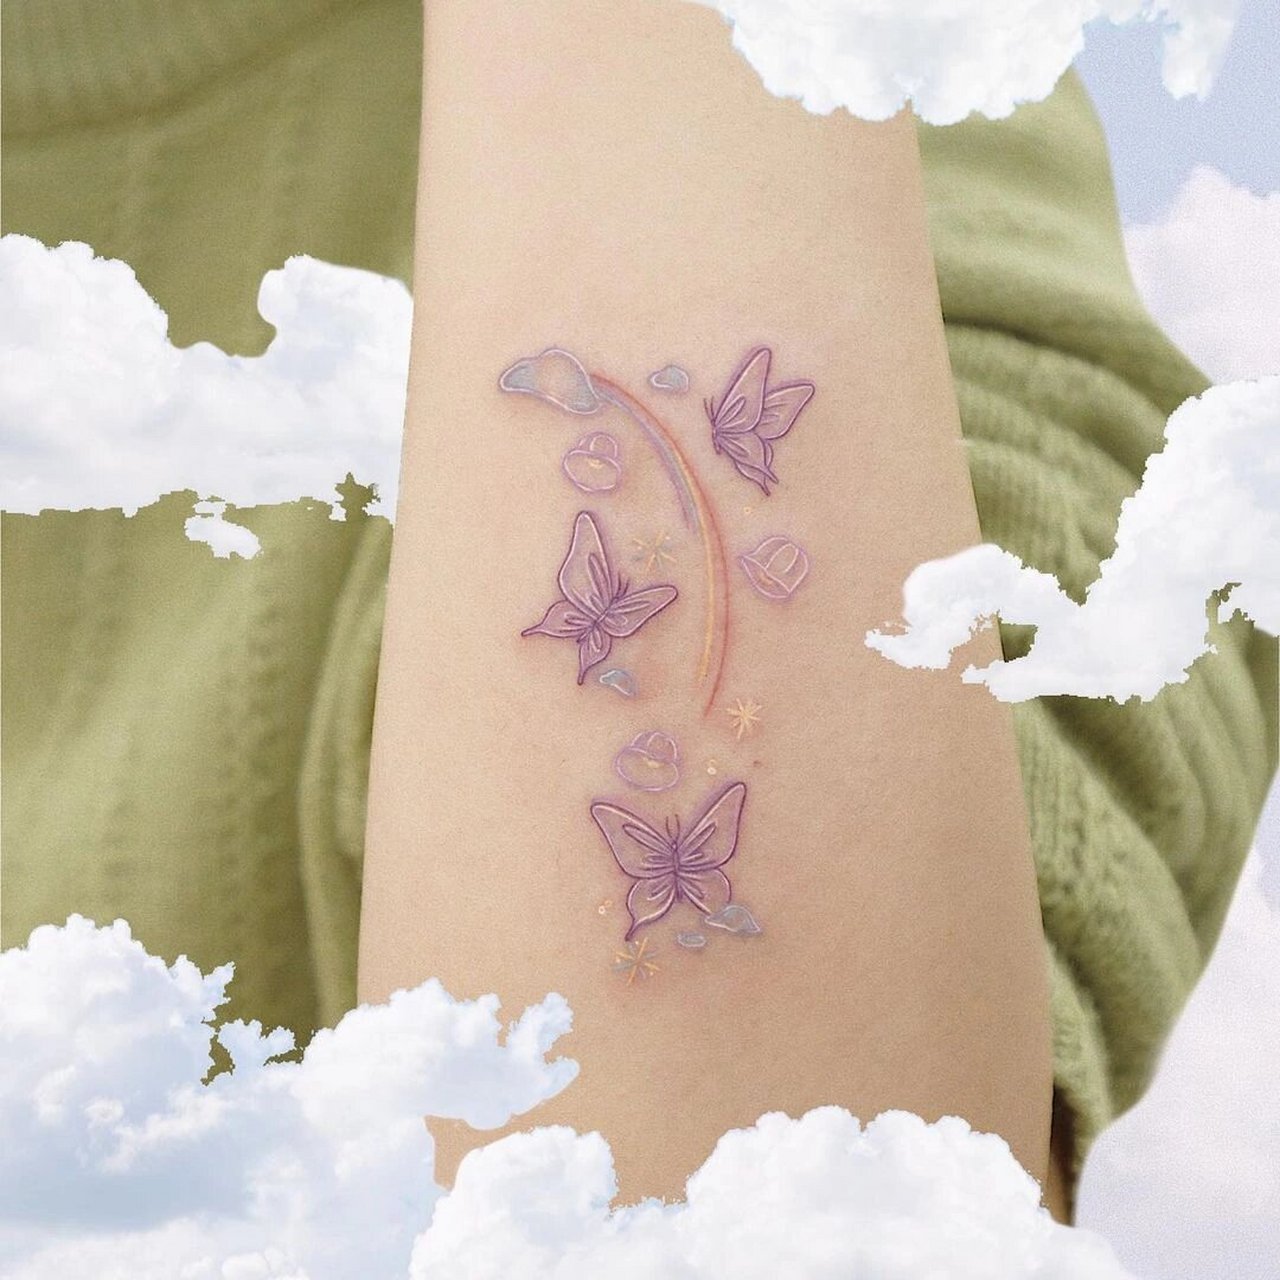 超美的简笔线条纹身合集9403 纯彩色线条感的纹身,各种鲜花,蝴蝶